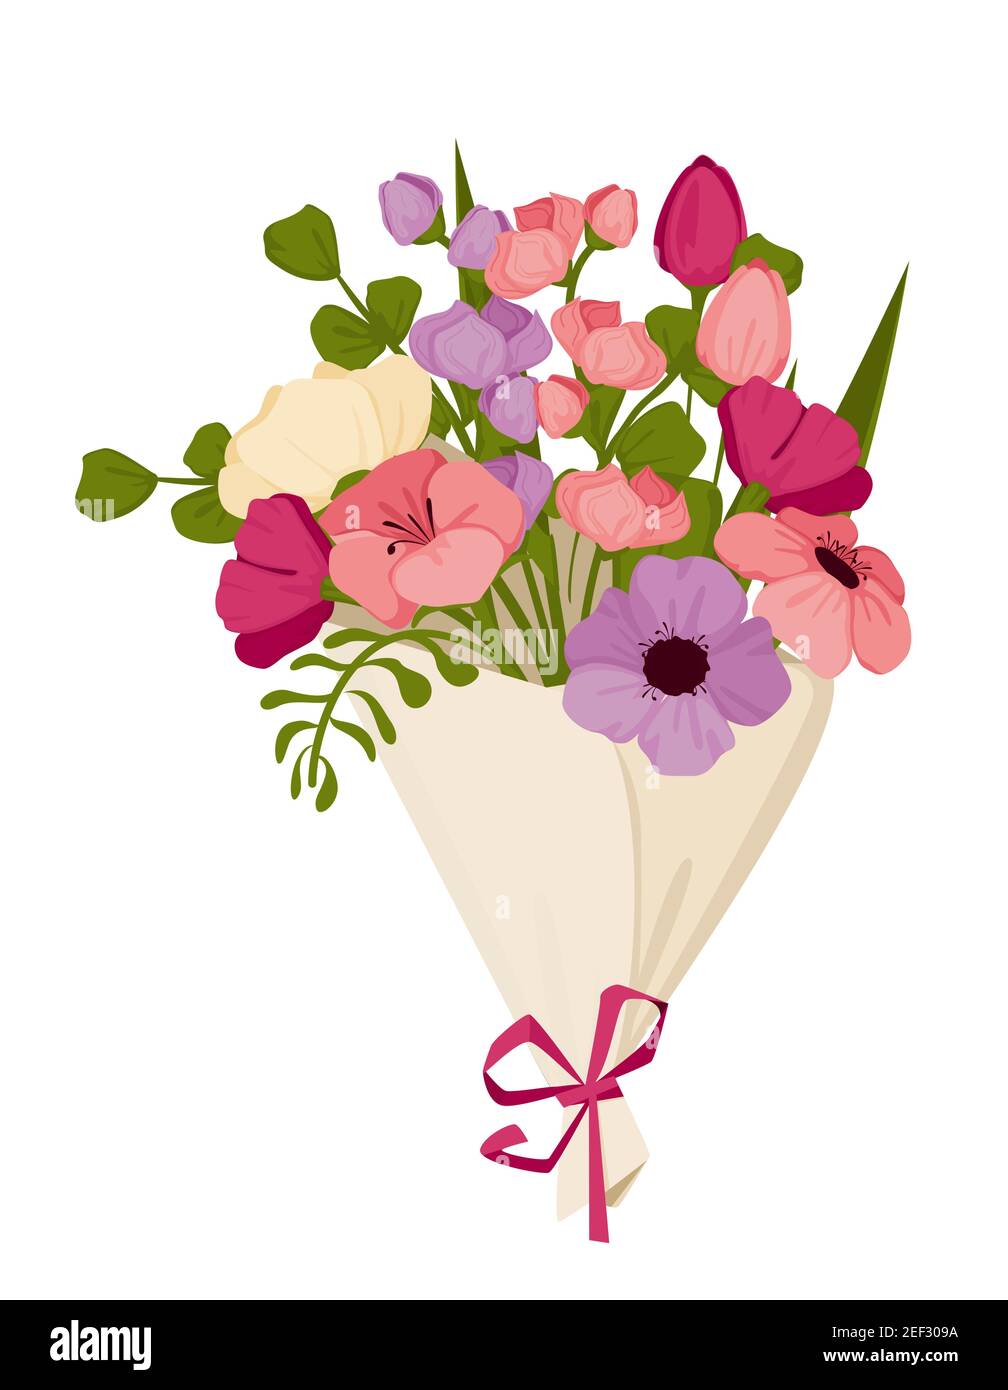 Frühlingsstrauß zum Muttertag mit Tulpen und anderen Blumen, März 8, Internationaler Frauentag. Vektor Stock Vektor